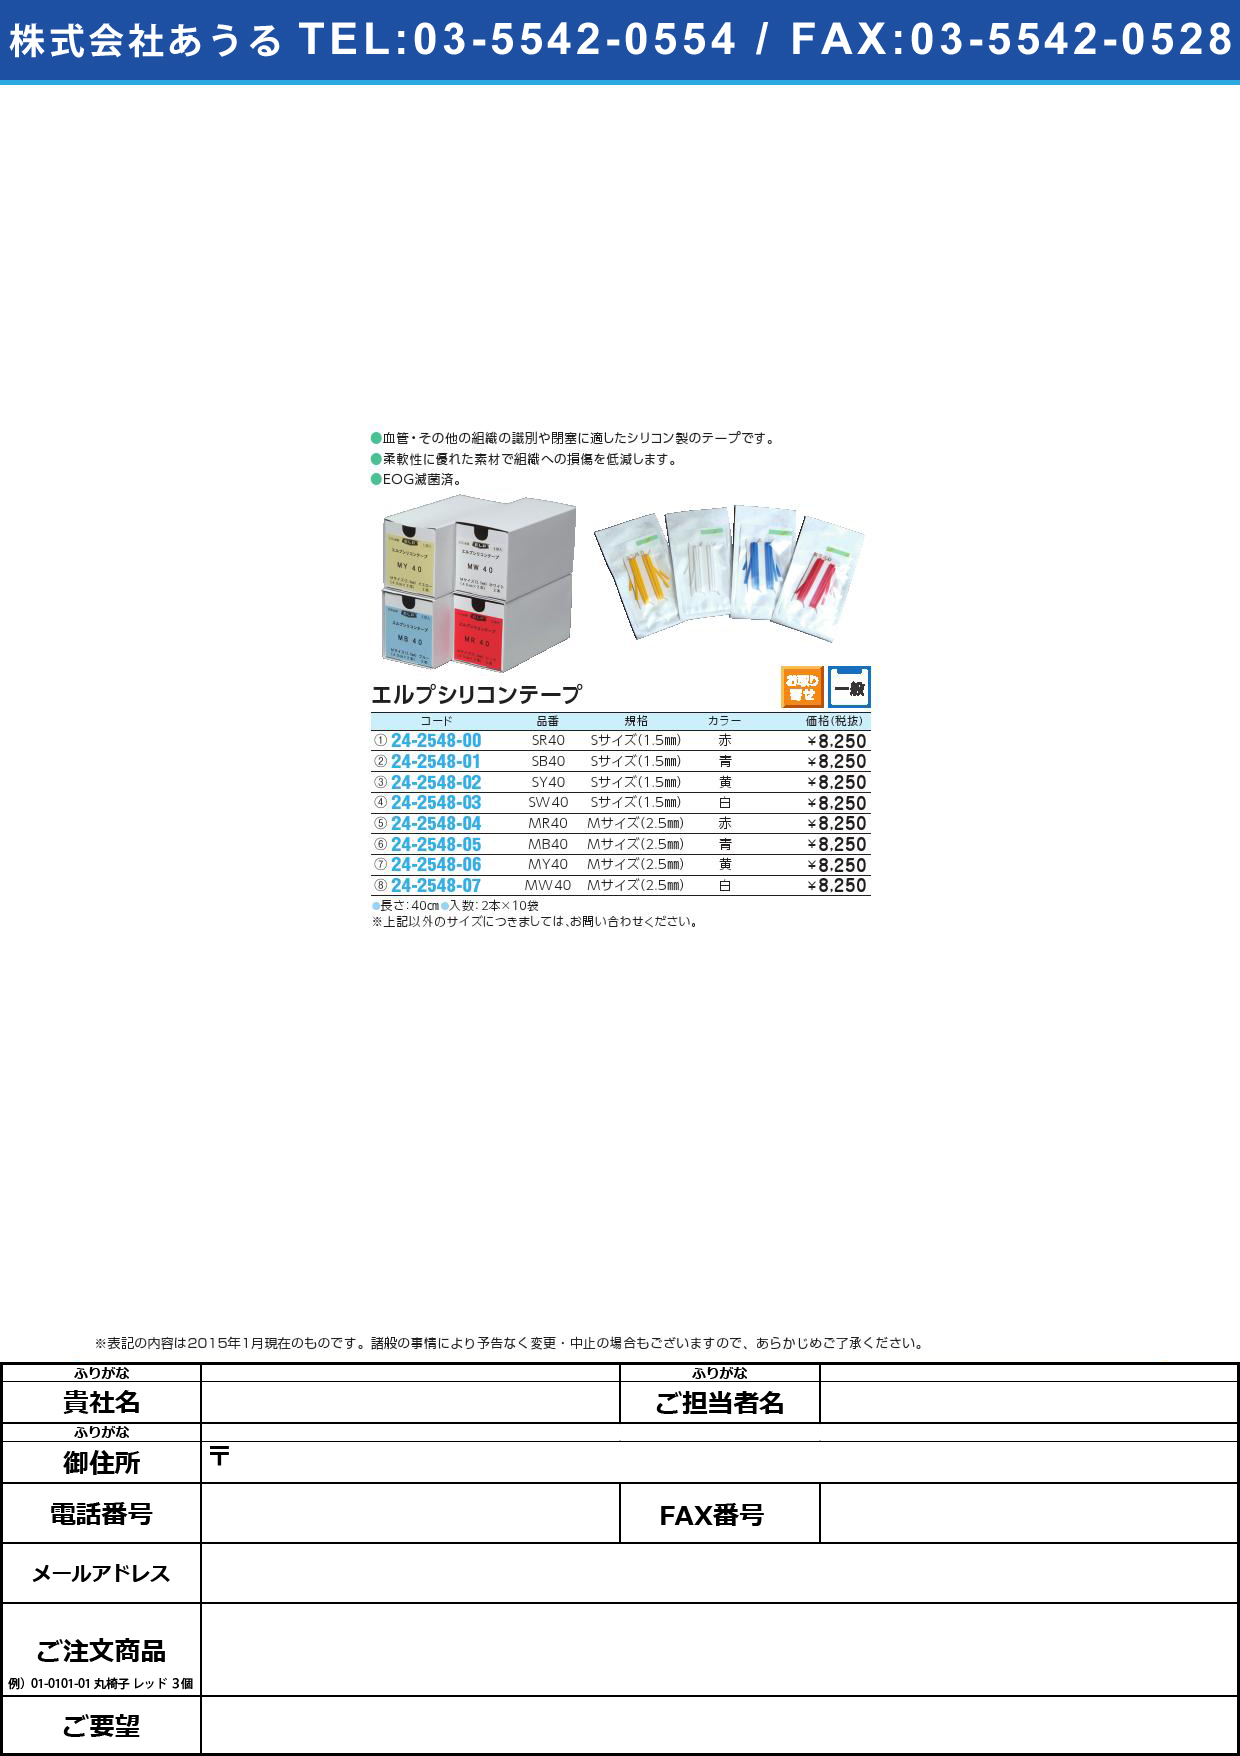 (24-2548-03)エルプシリコンテープ Ｓサイズ ｴﾙﾌﾟｼﾘｺﾝﾃｰﾌﾟSｻｲｽﾞ(24-2548-03)SW40(ｼﾛ)2ﾎﾝX10ﾌｸﾛｲﾘ【1箱単位】【2015年カタログ商品】